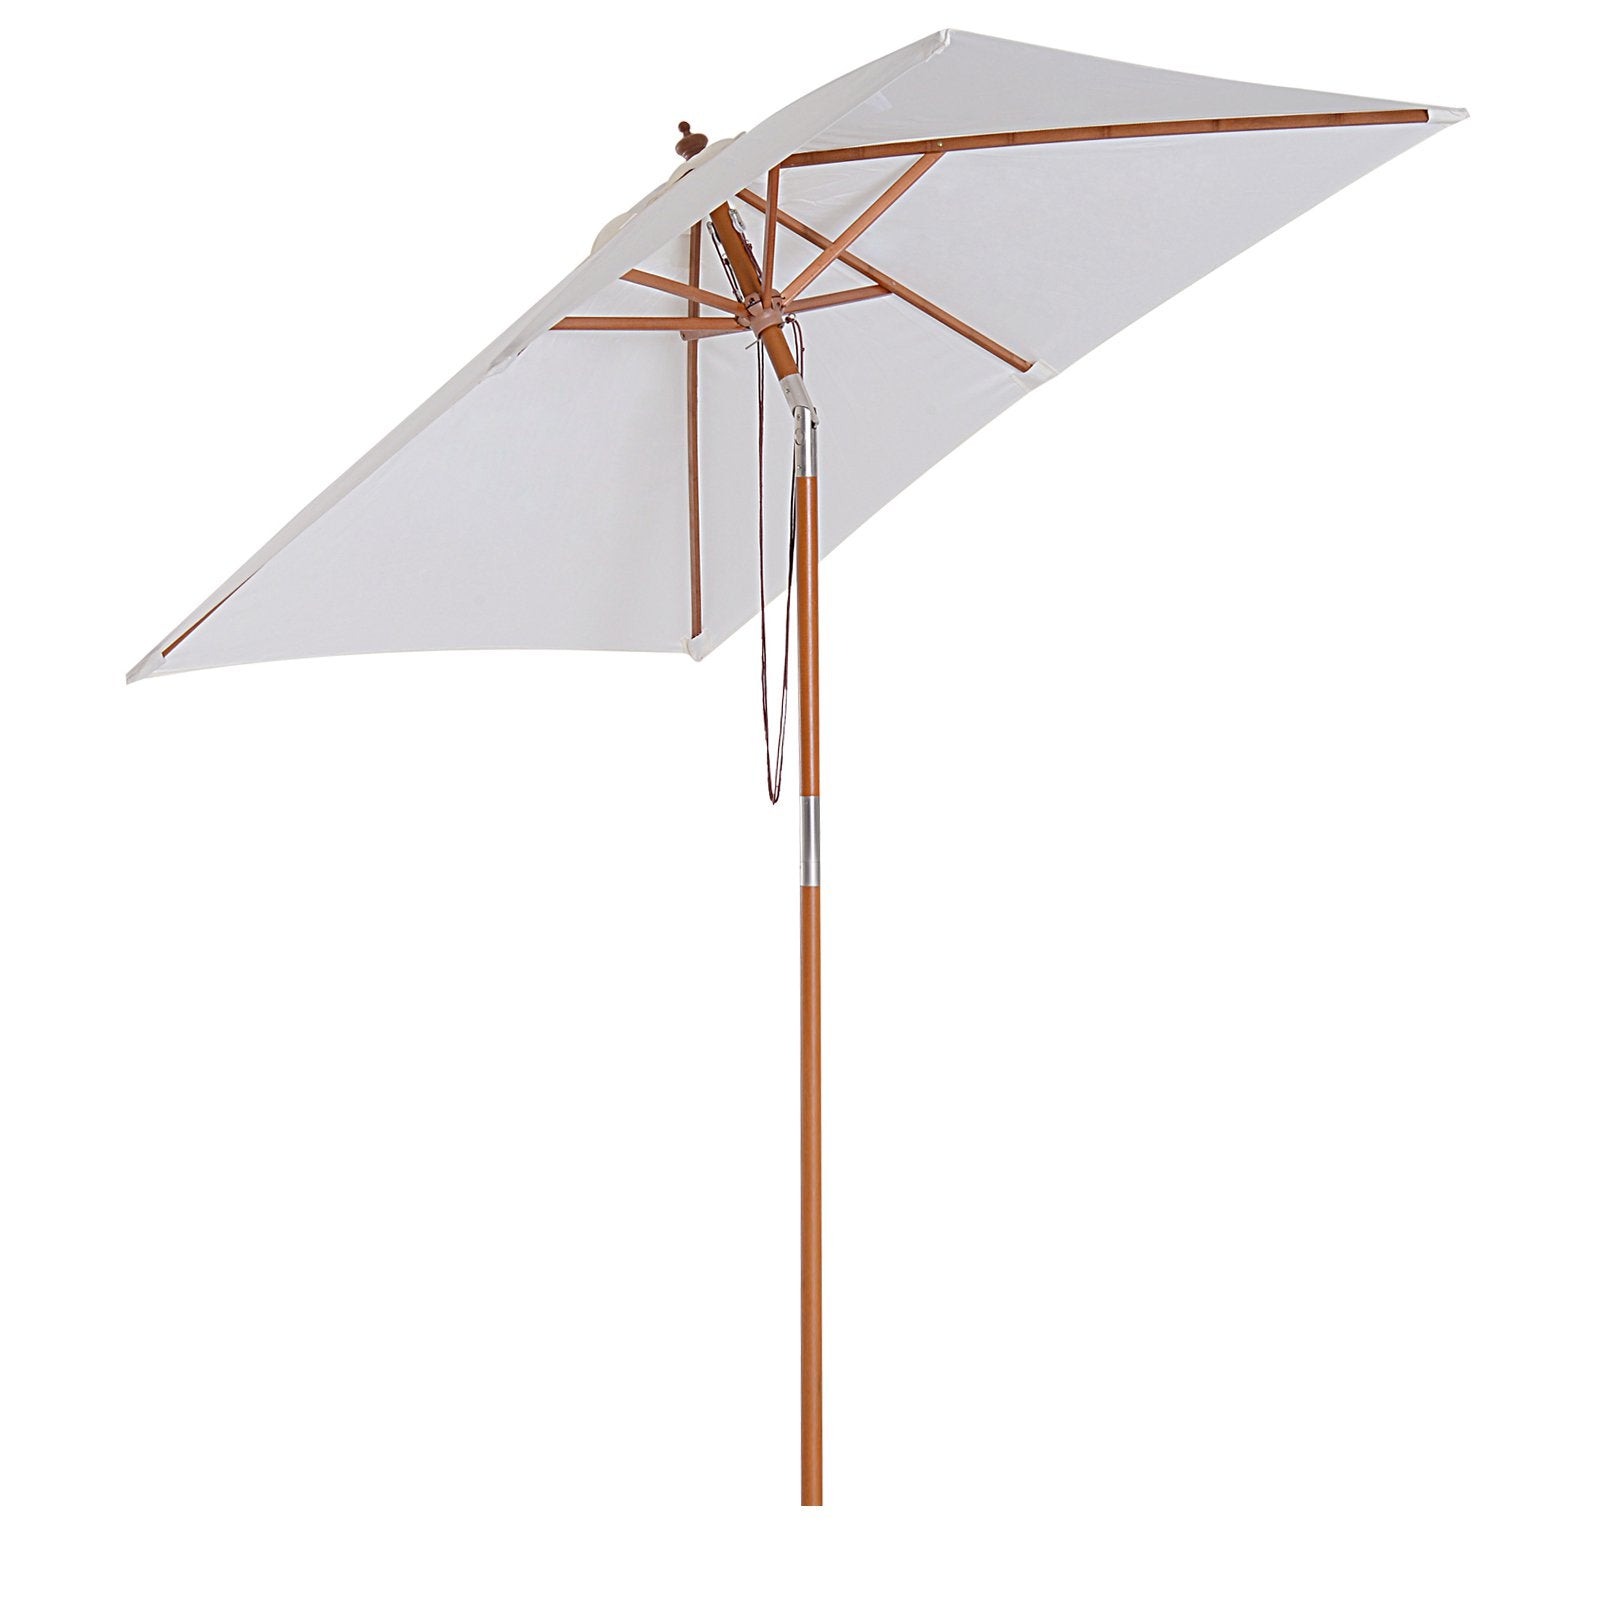 Outsunny Wooden Patio Umbrella Market Parasol Outdoor Sunshade Cream White  | TJ Hughes